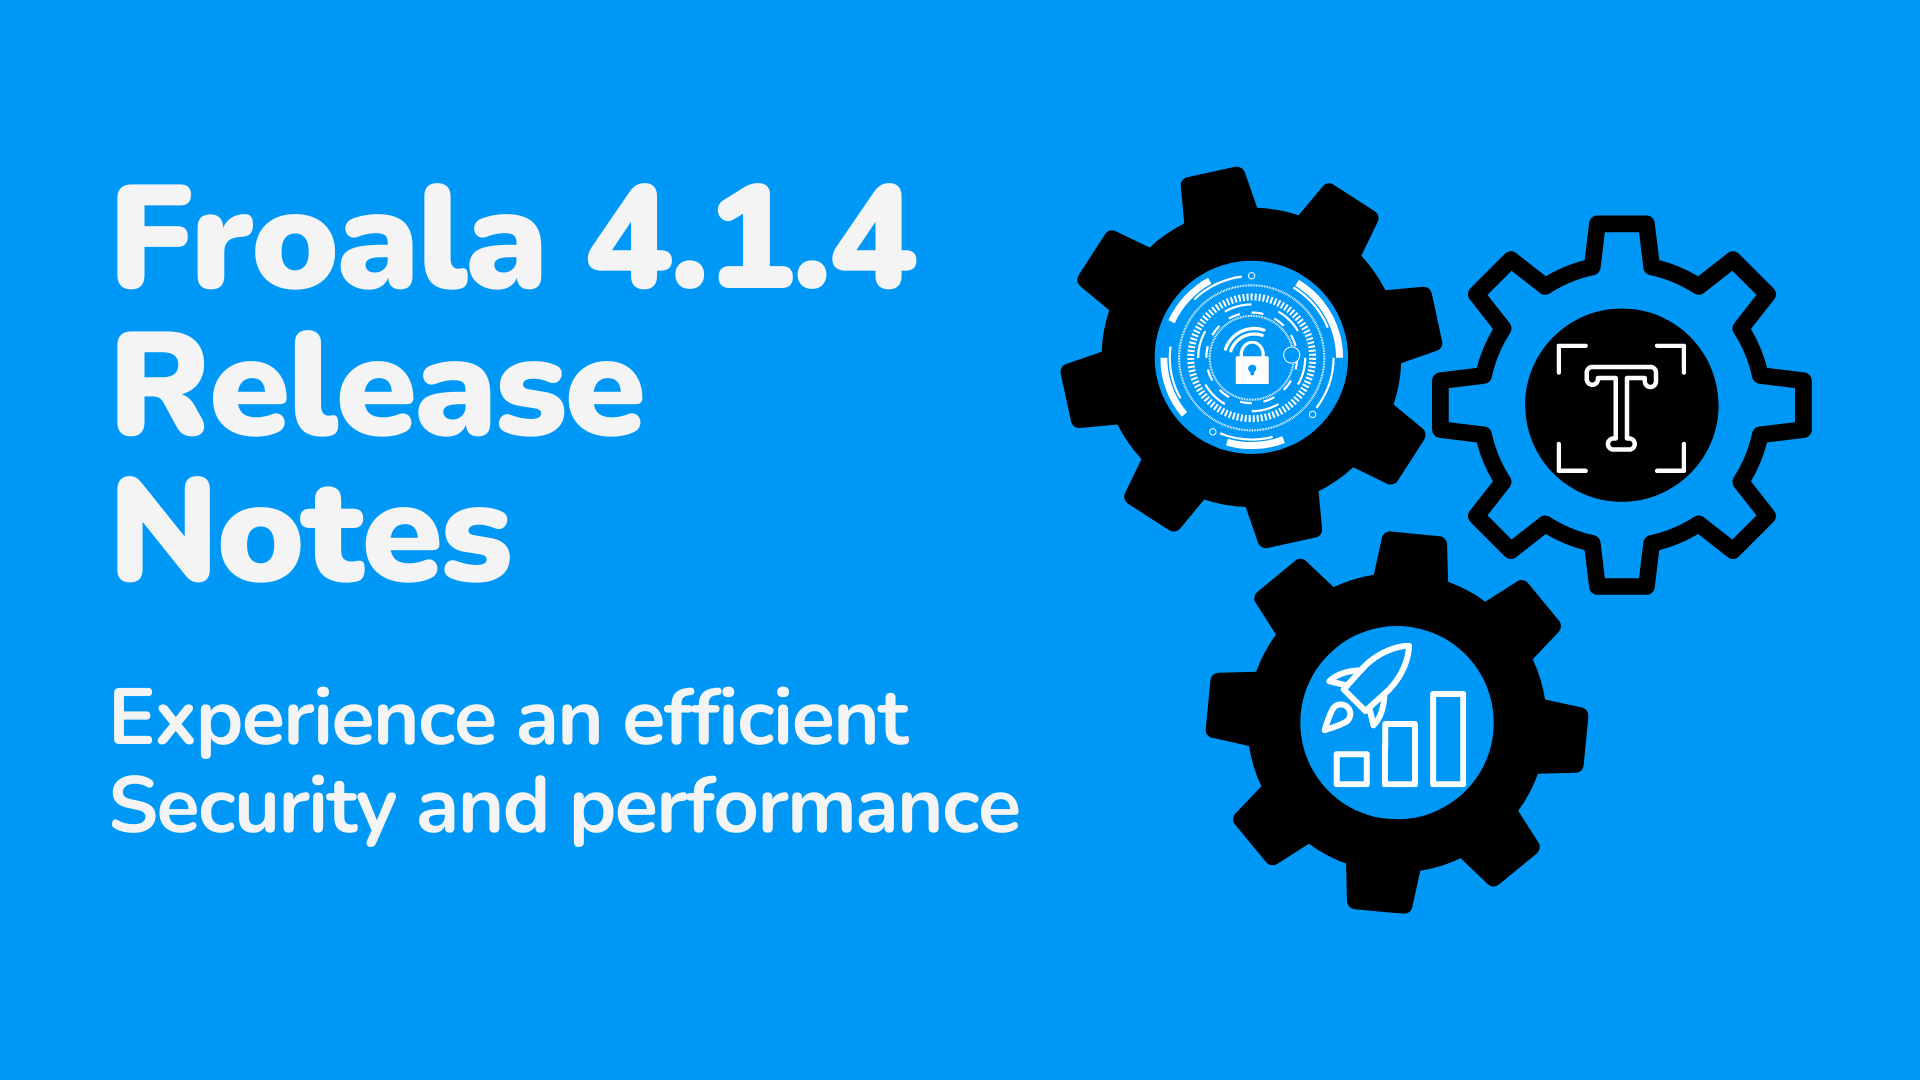 Froala 4.1.4 release